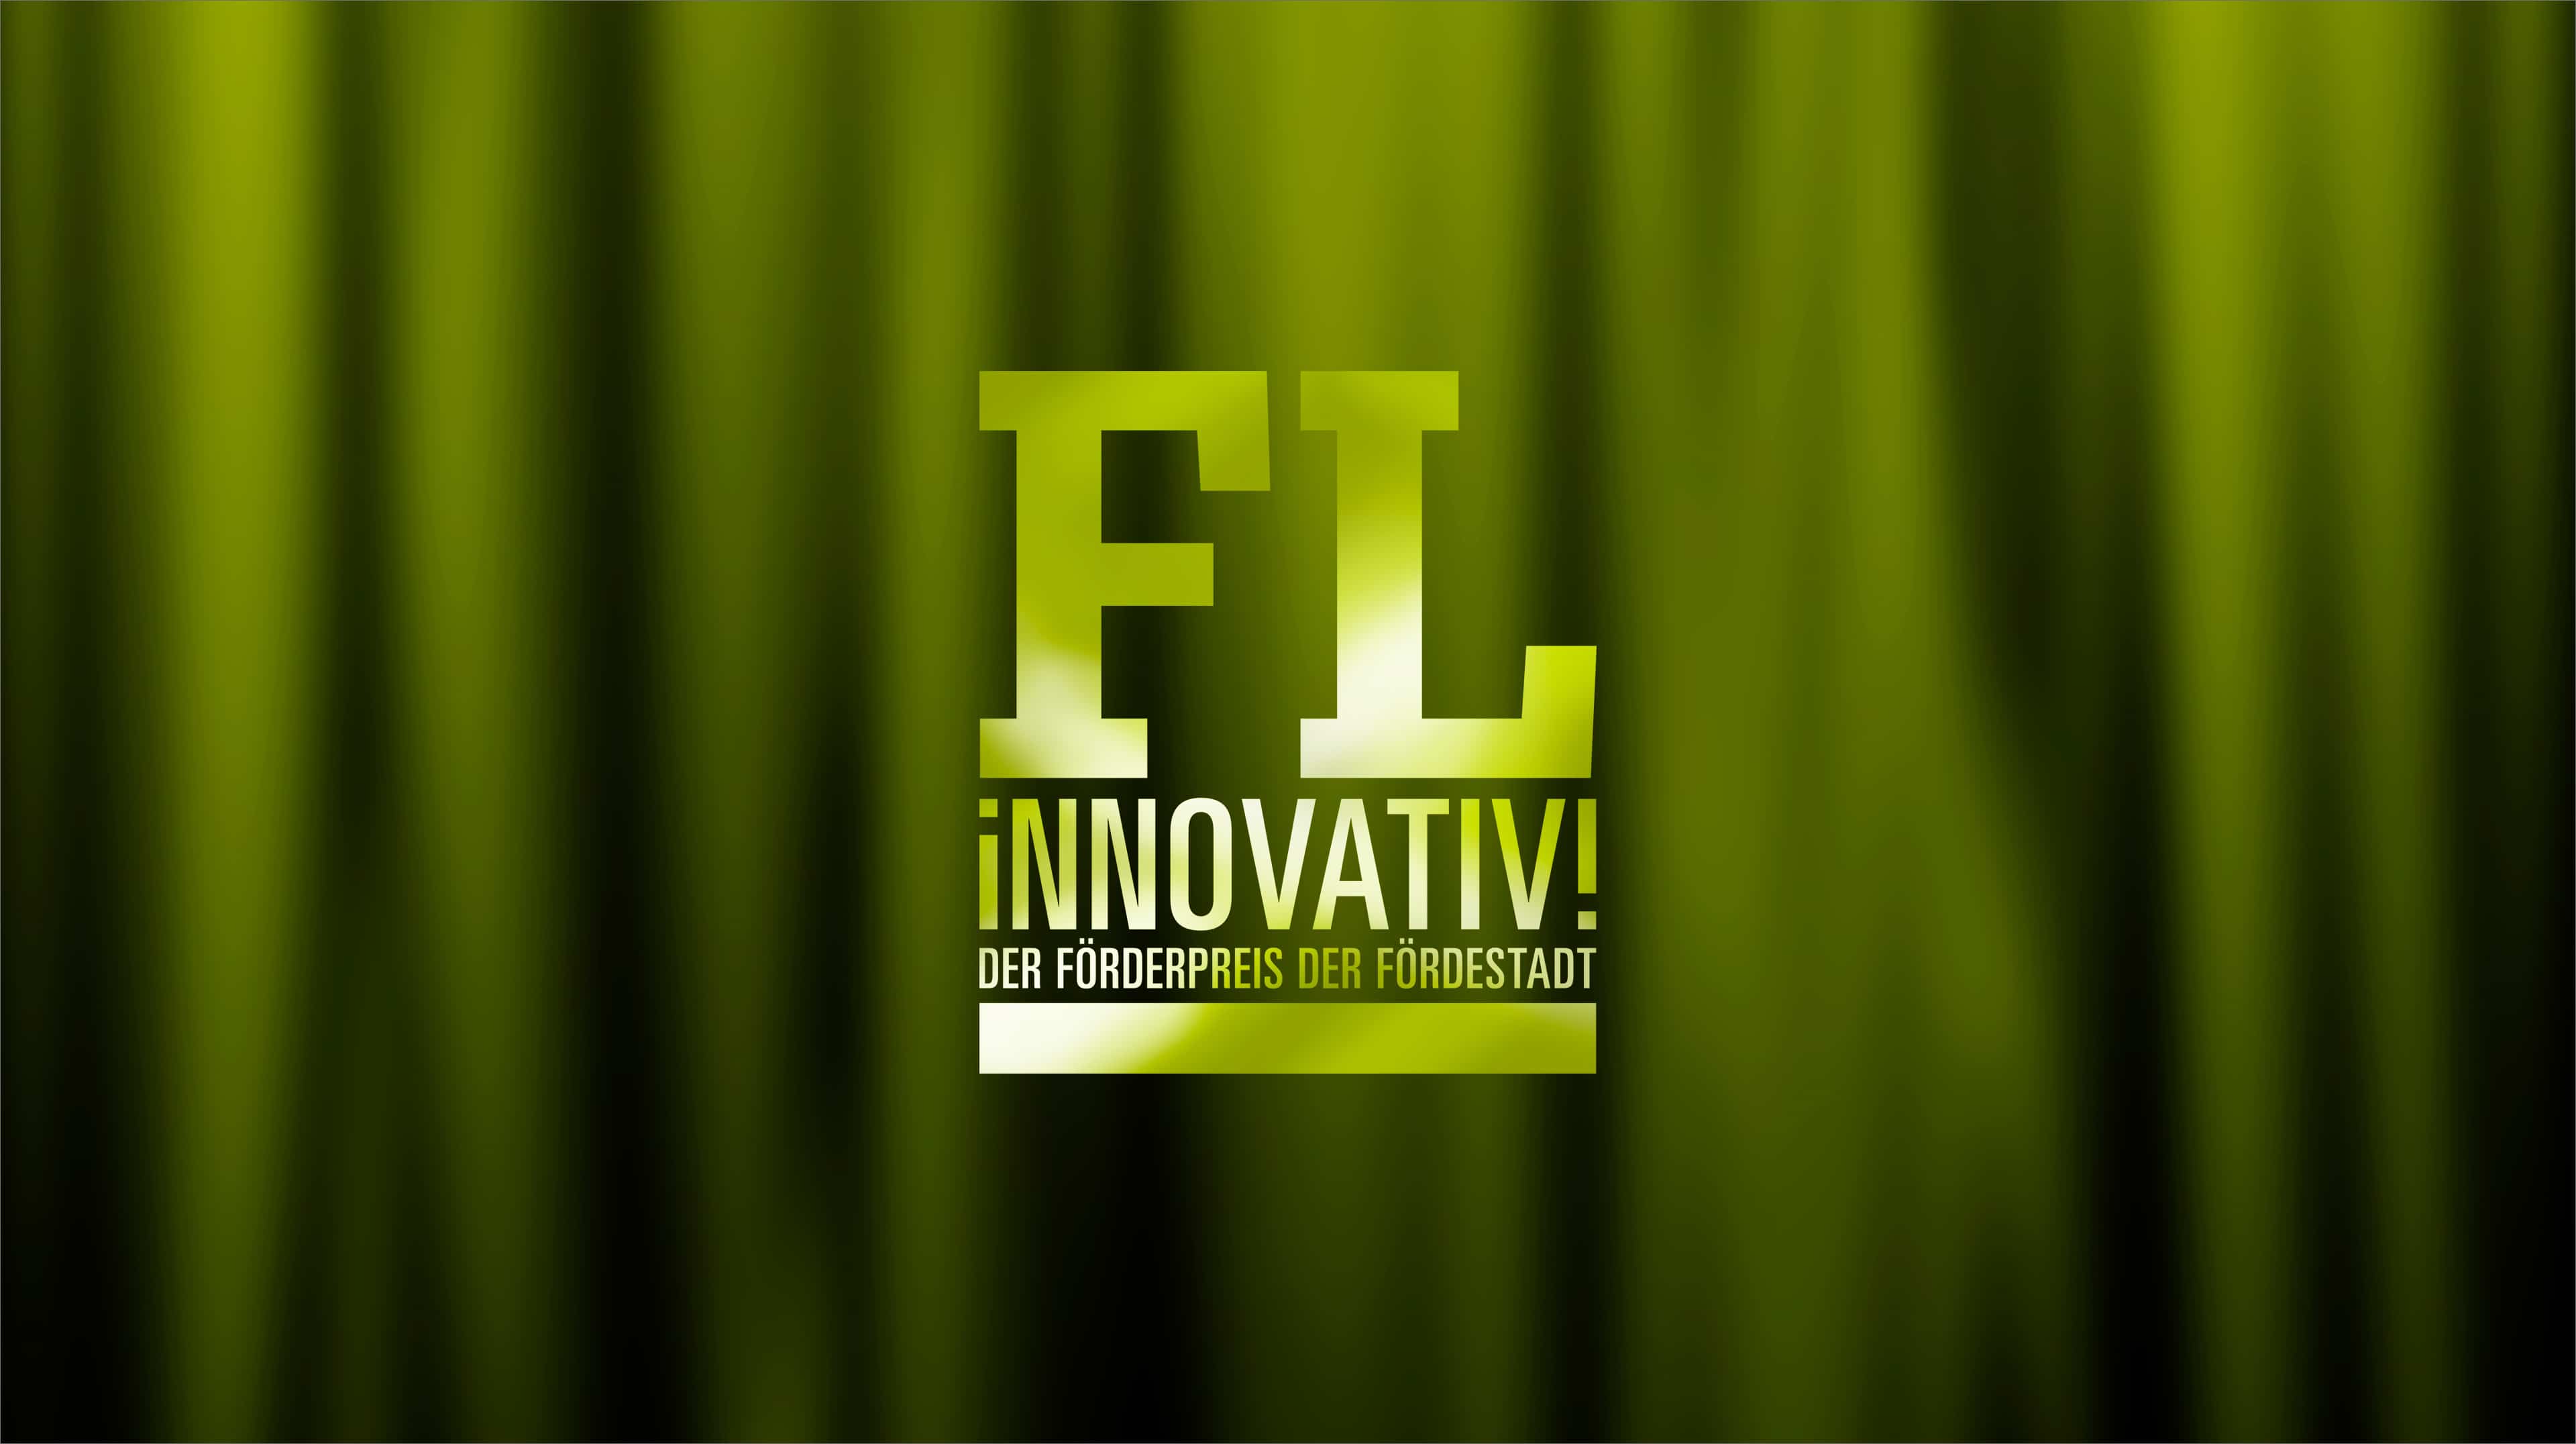 "FL innovativ! Der Förderpreis der Fördestadt" vor grün-schwarzem Hintergrund